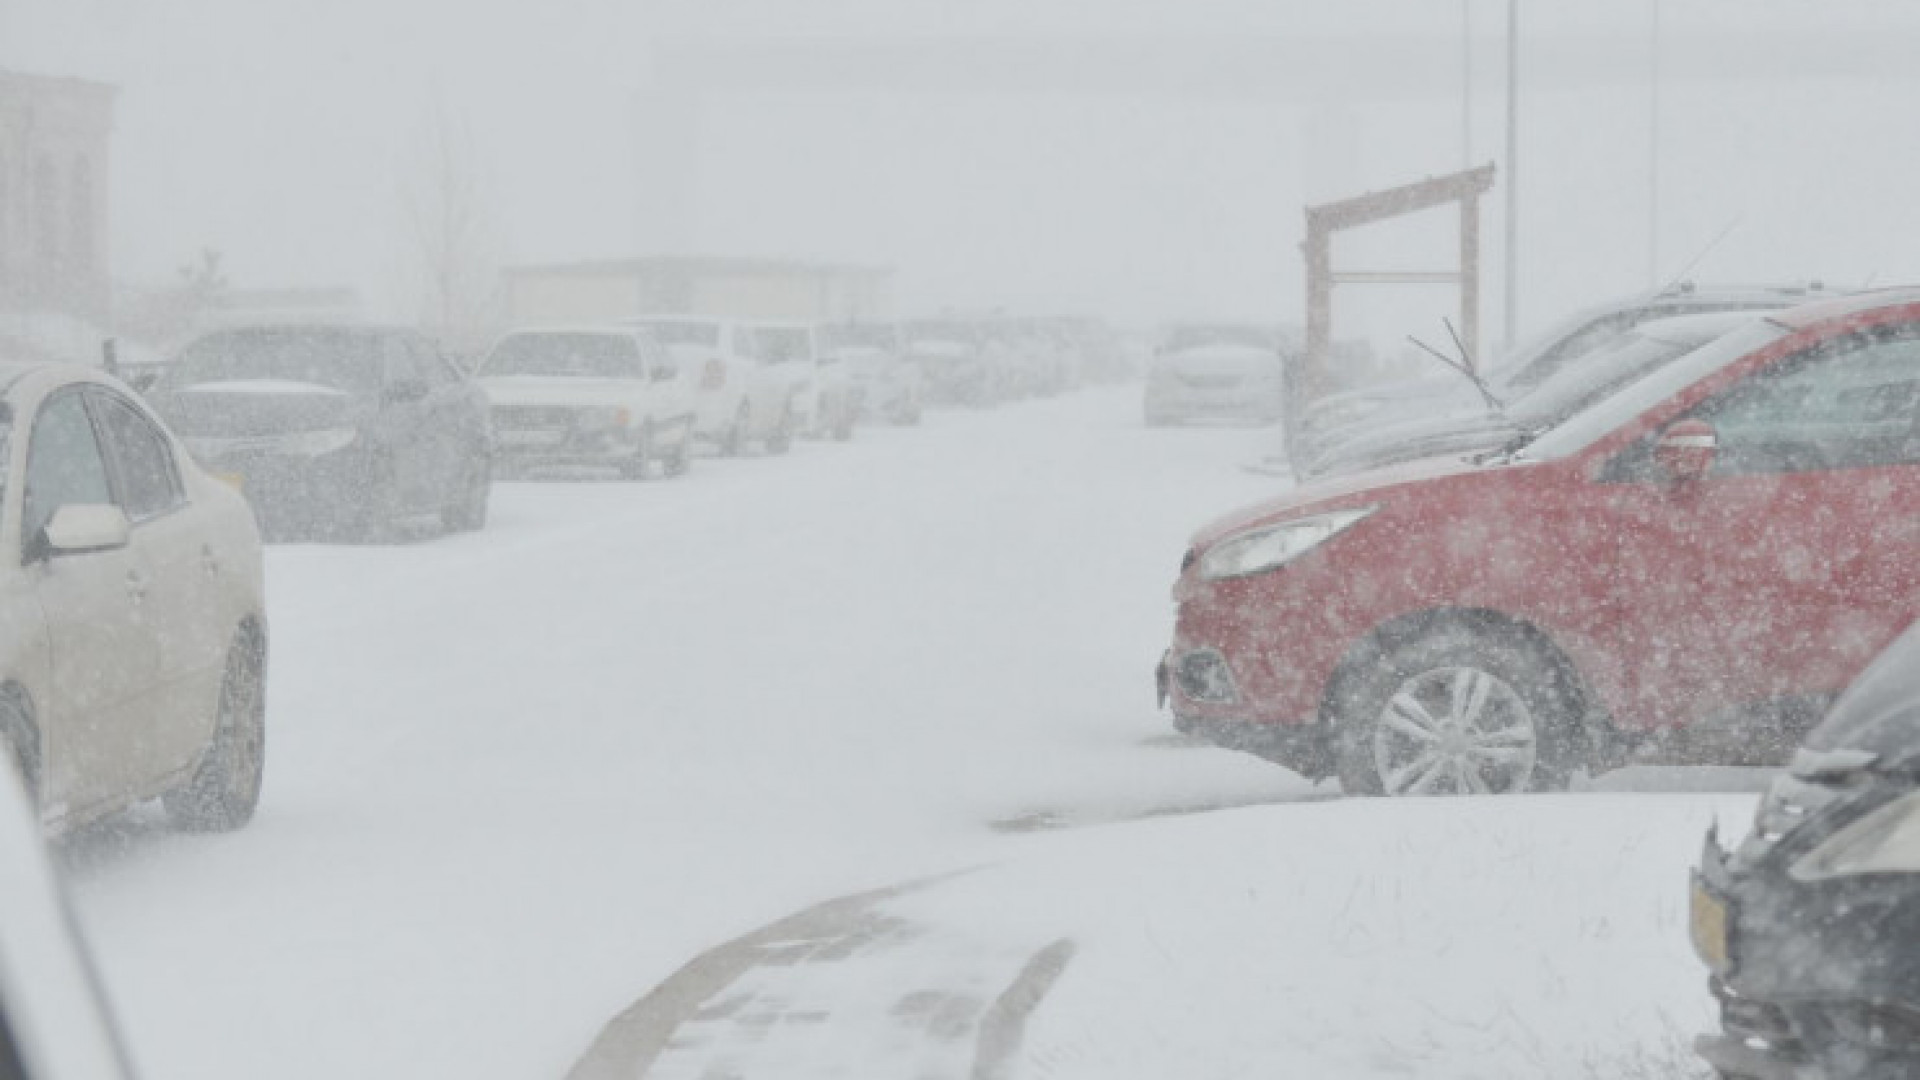 Шок! Снежная буря в Астане: дороги закрыты